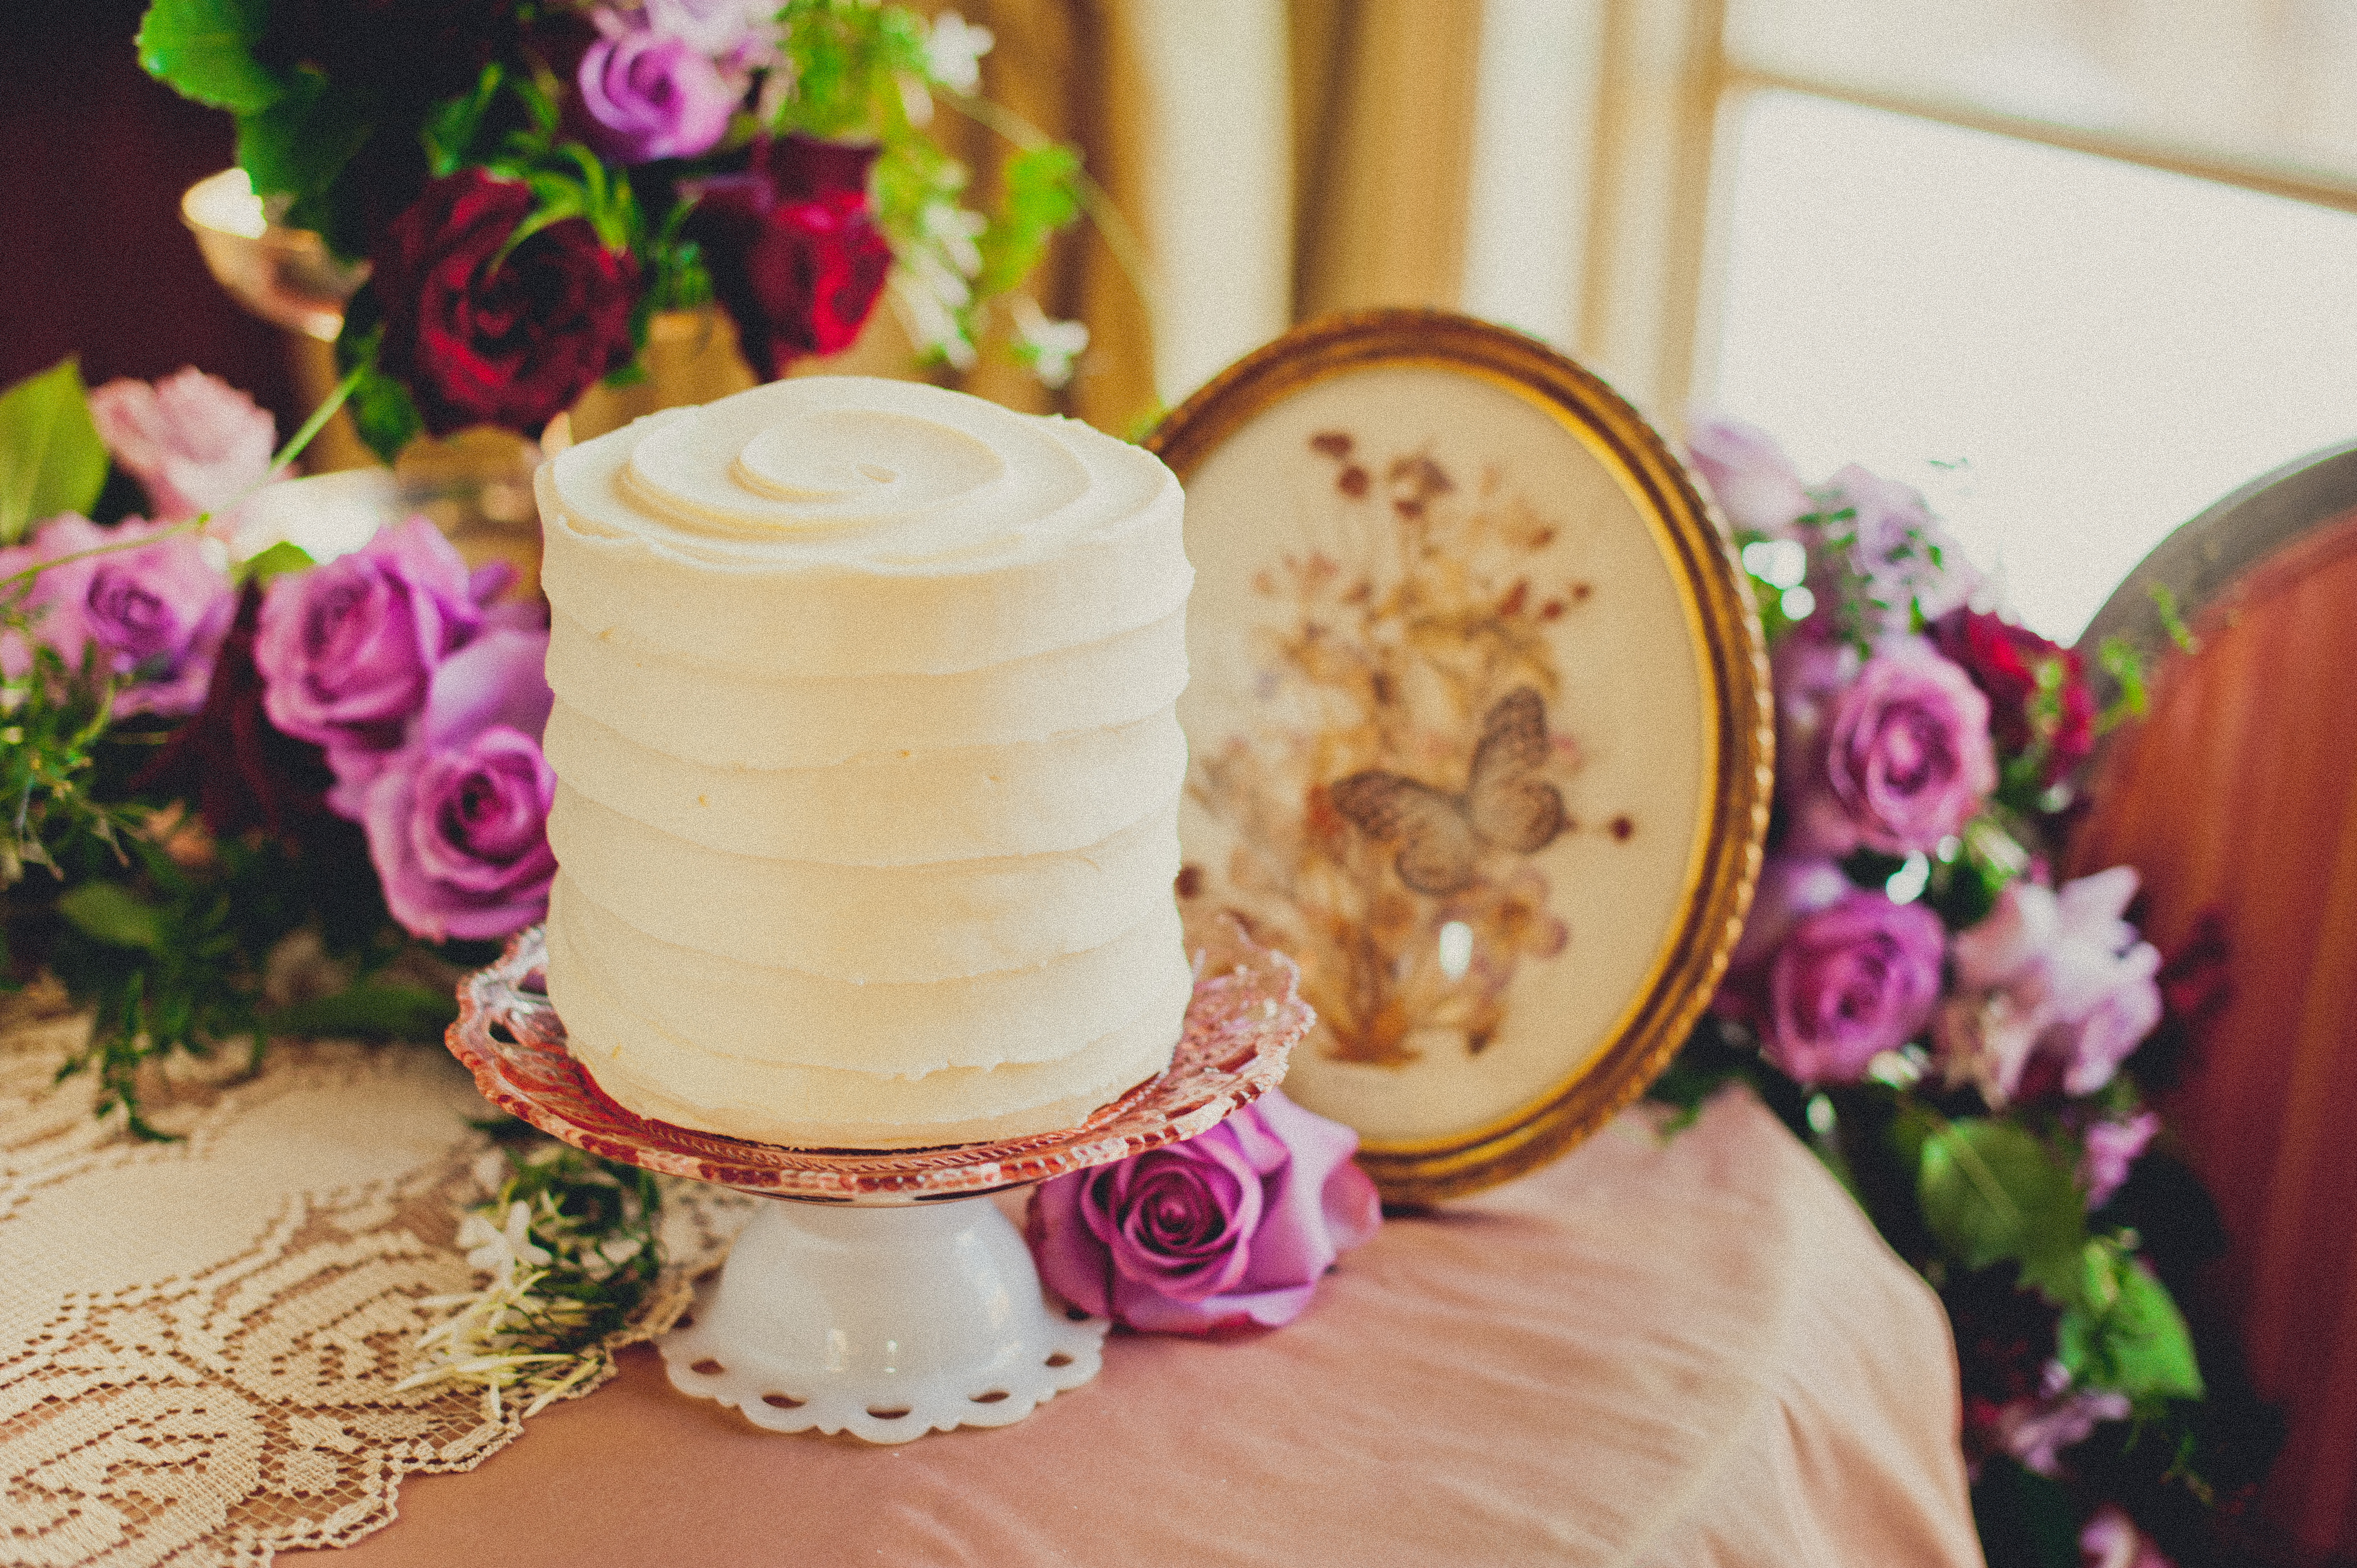 Victorian era inspired wedding desserts